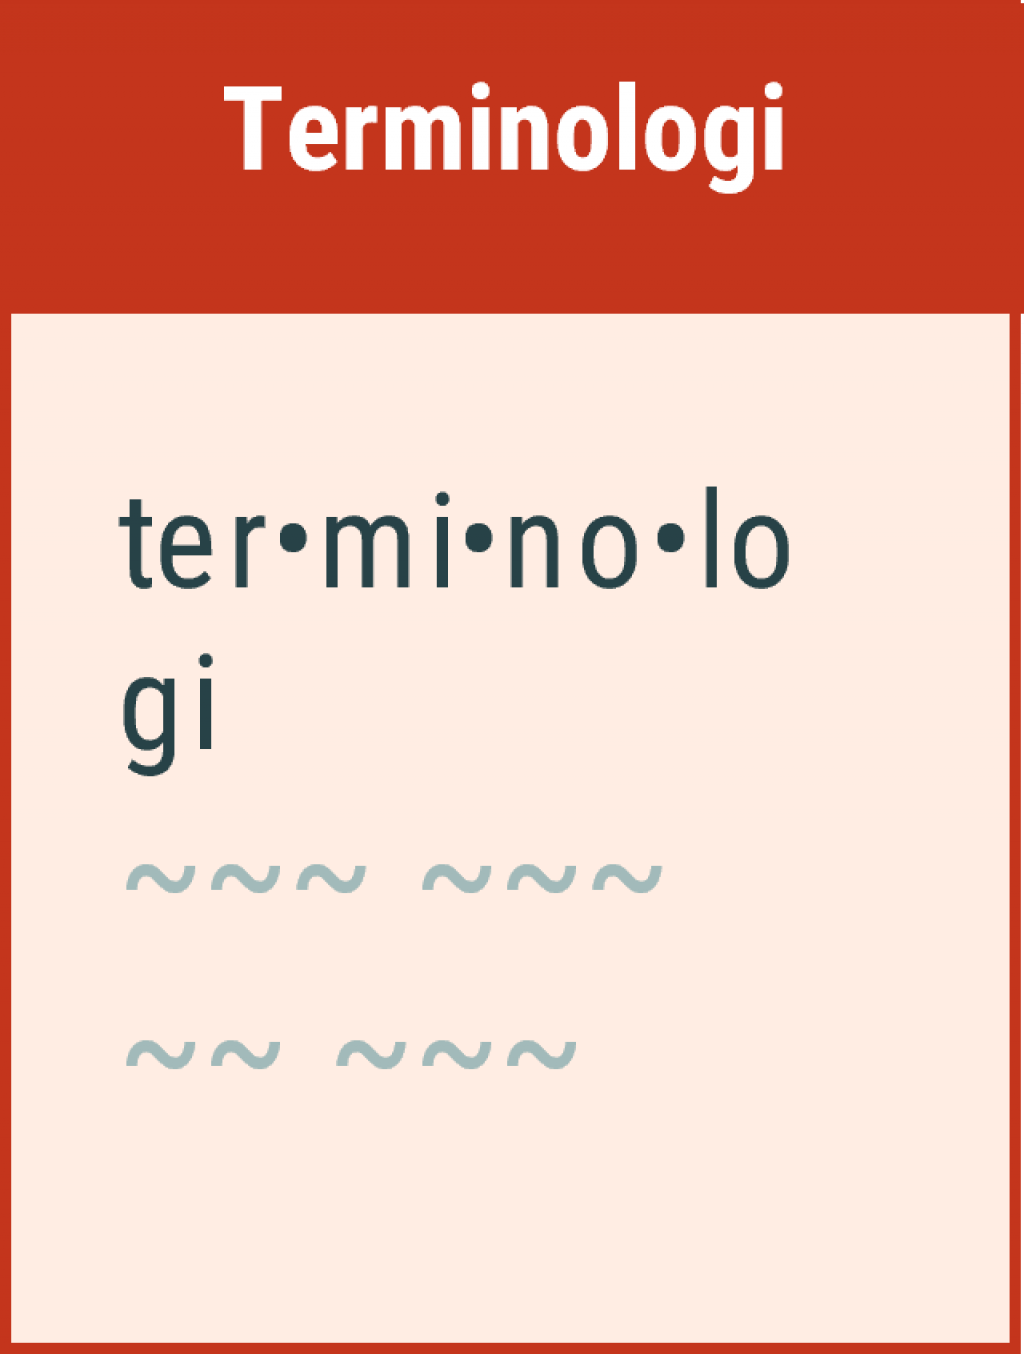 Terminologi - Prinsipp for informasjonsmodellering